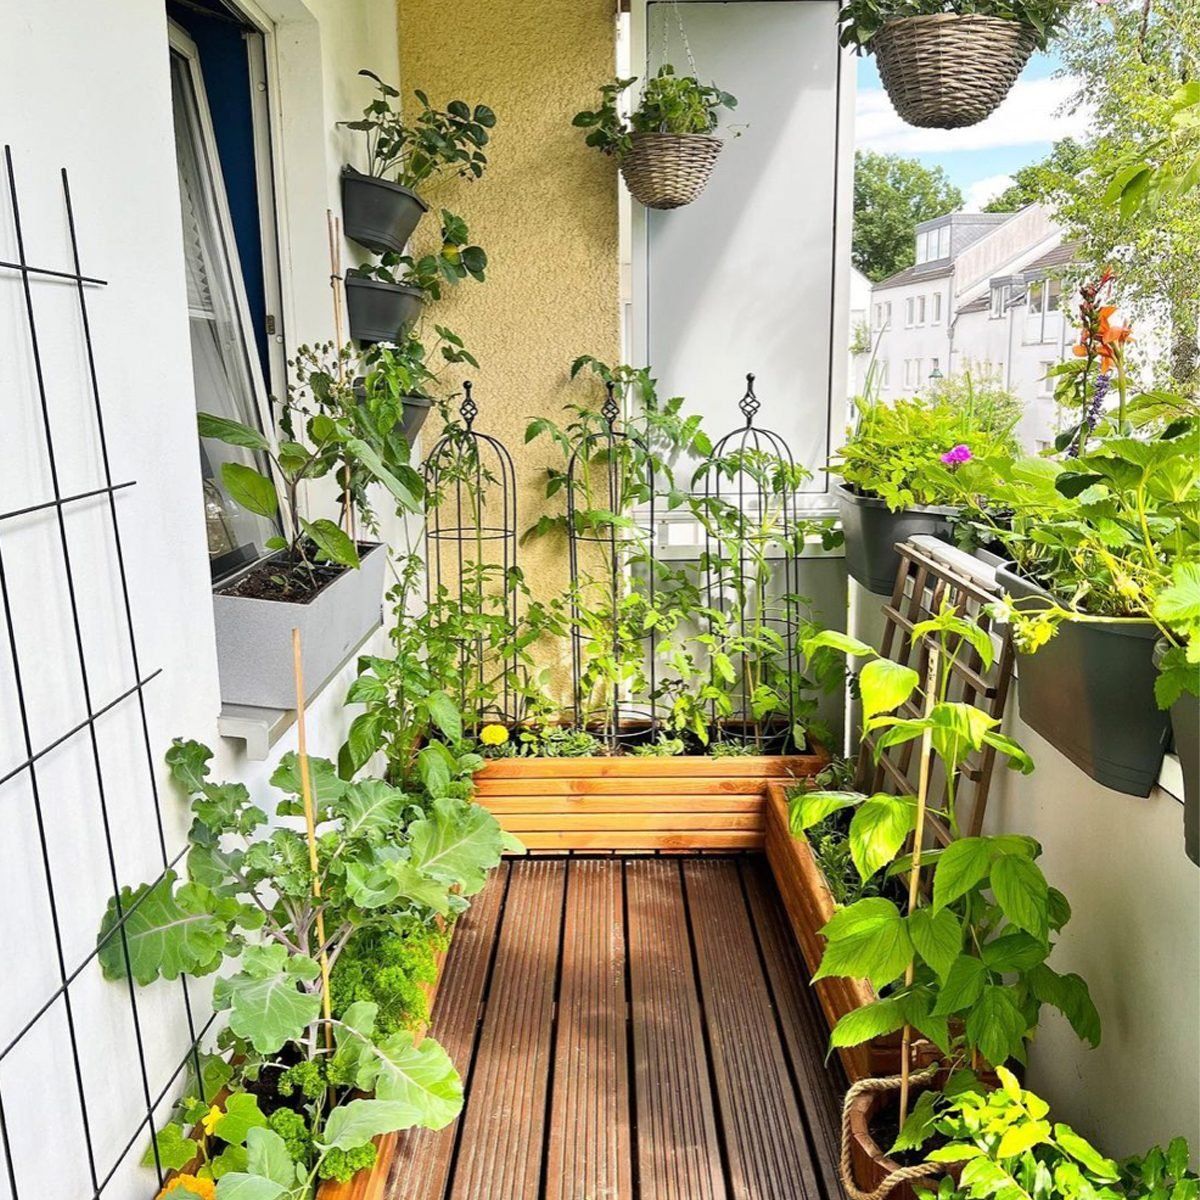 balcony garden ideas